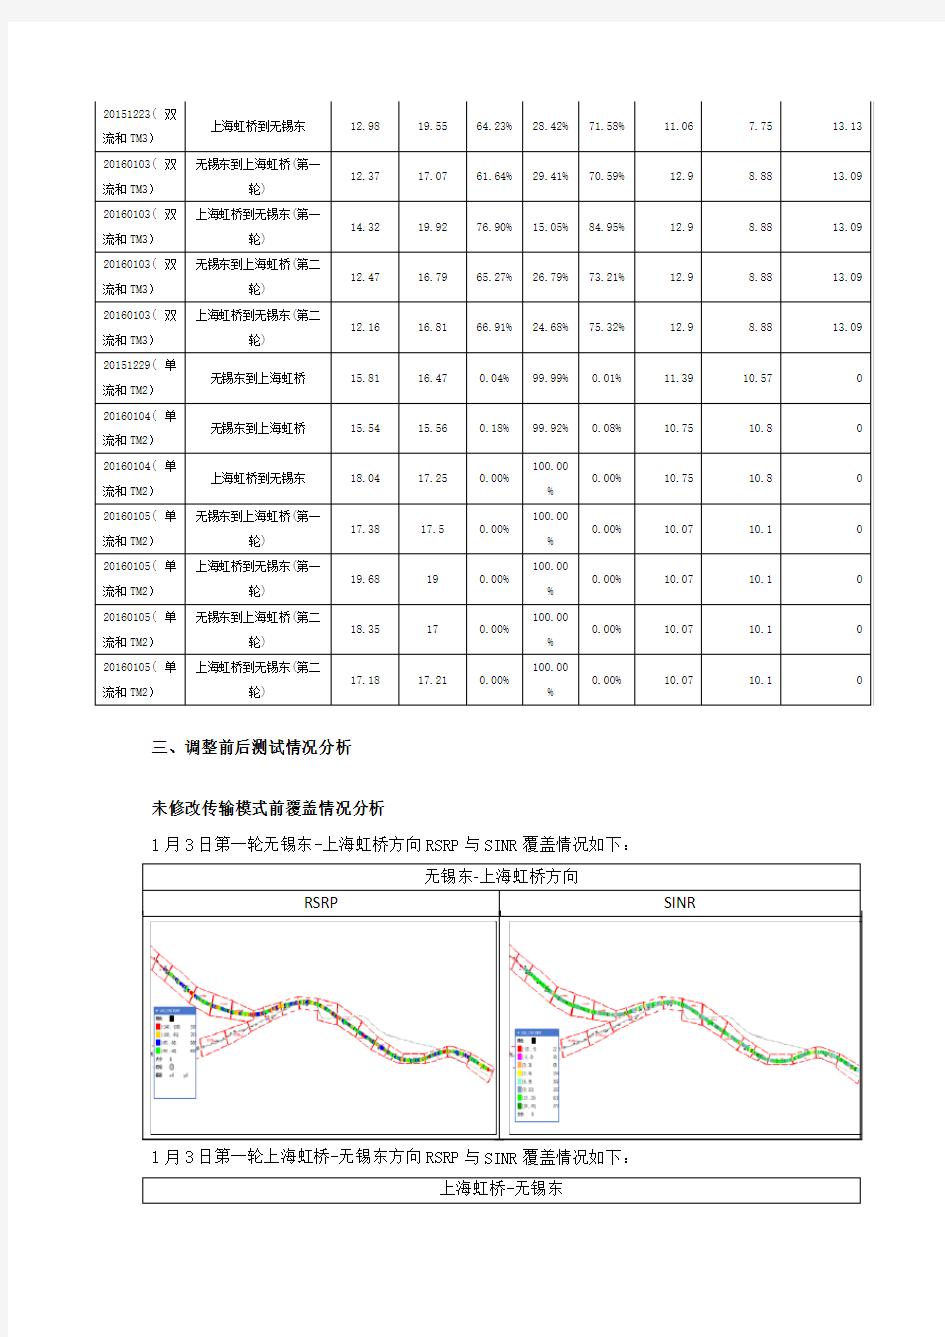 京沪高铁传输模式修改前后对比报告(更新)